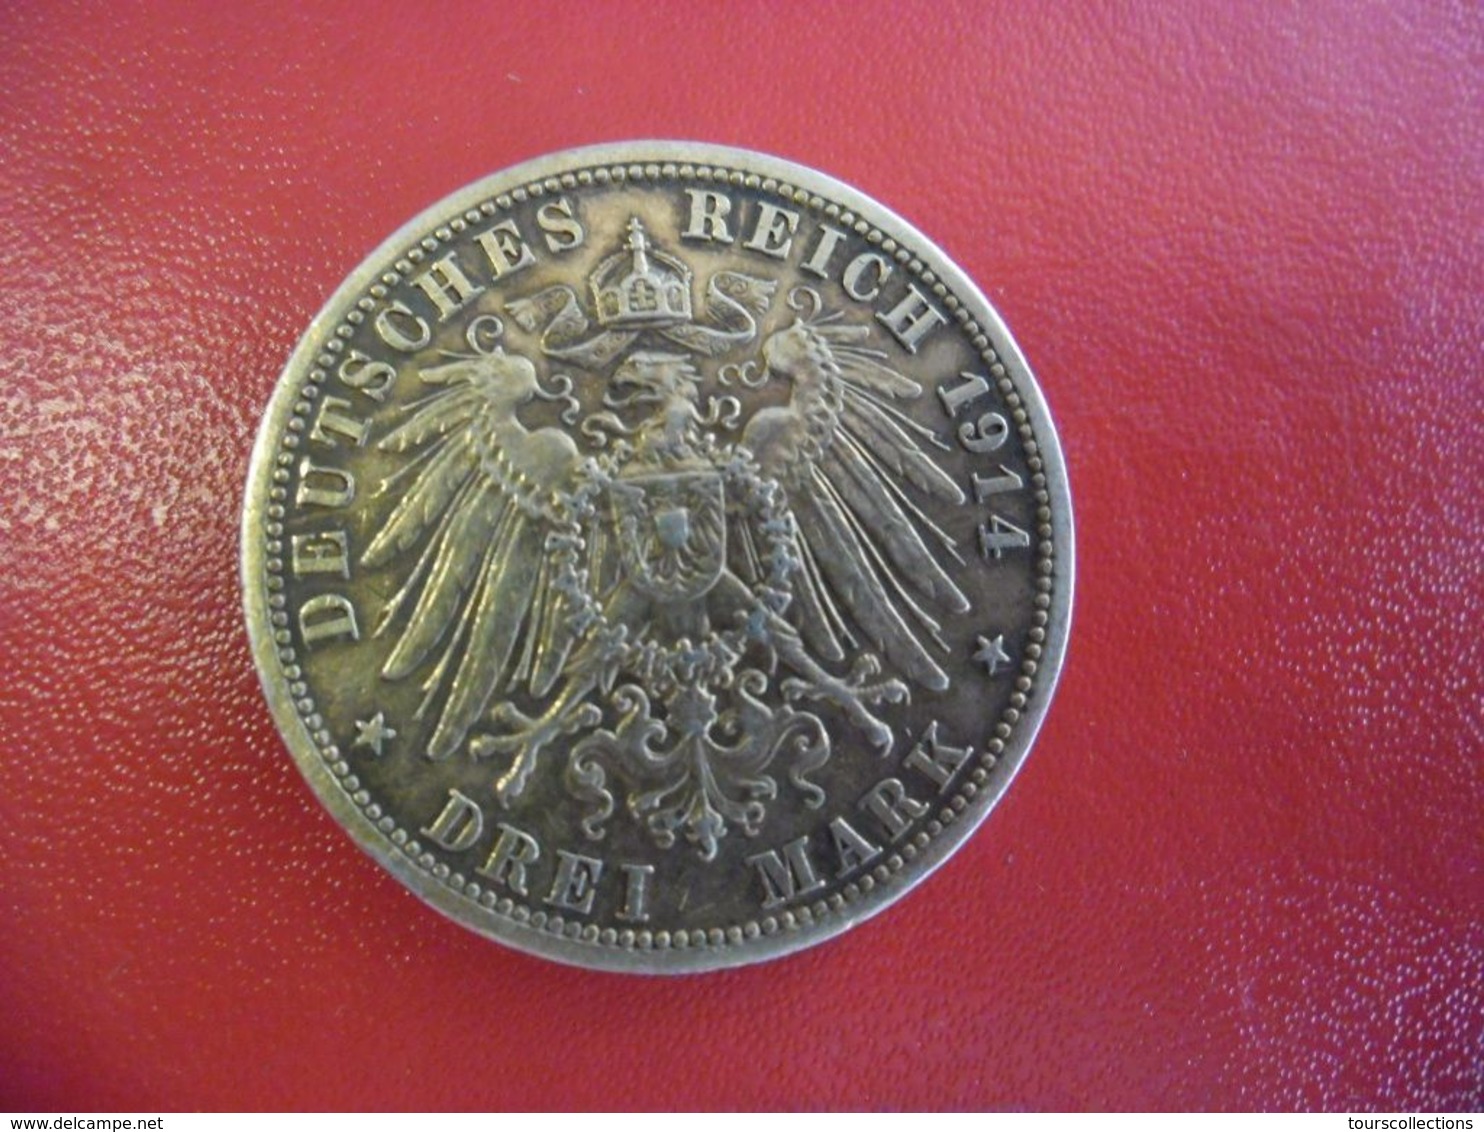 MONNAIE ARGENT 90% - DREI 3 MARK ALLEMAGNE 1914 Deutsches Reich Aigle Preussen Prusse - 2, 3 & 5 Mark Silber